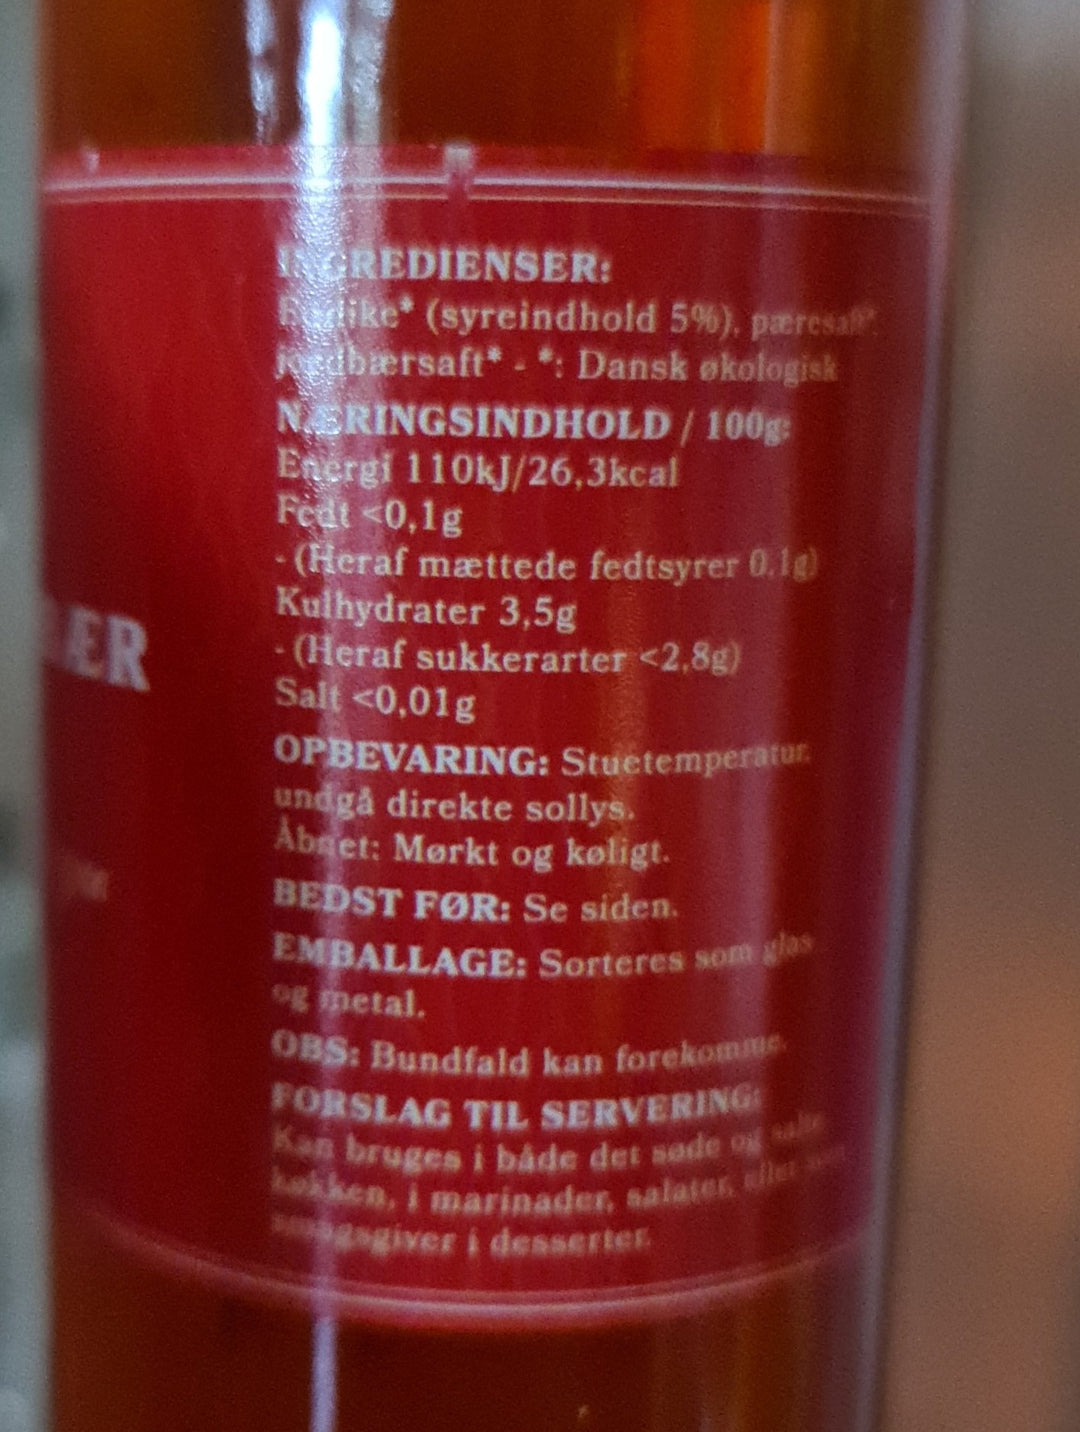 FRA FEJO Bio Apfel-und Erdbeer-Essig , 250 ml Flasche - British Moments / Fernweh-Kaufhaus